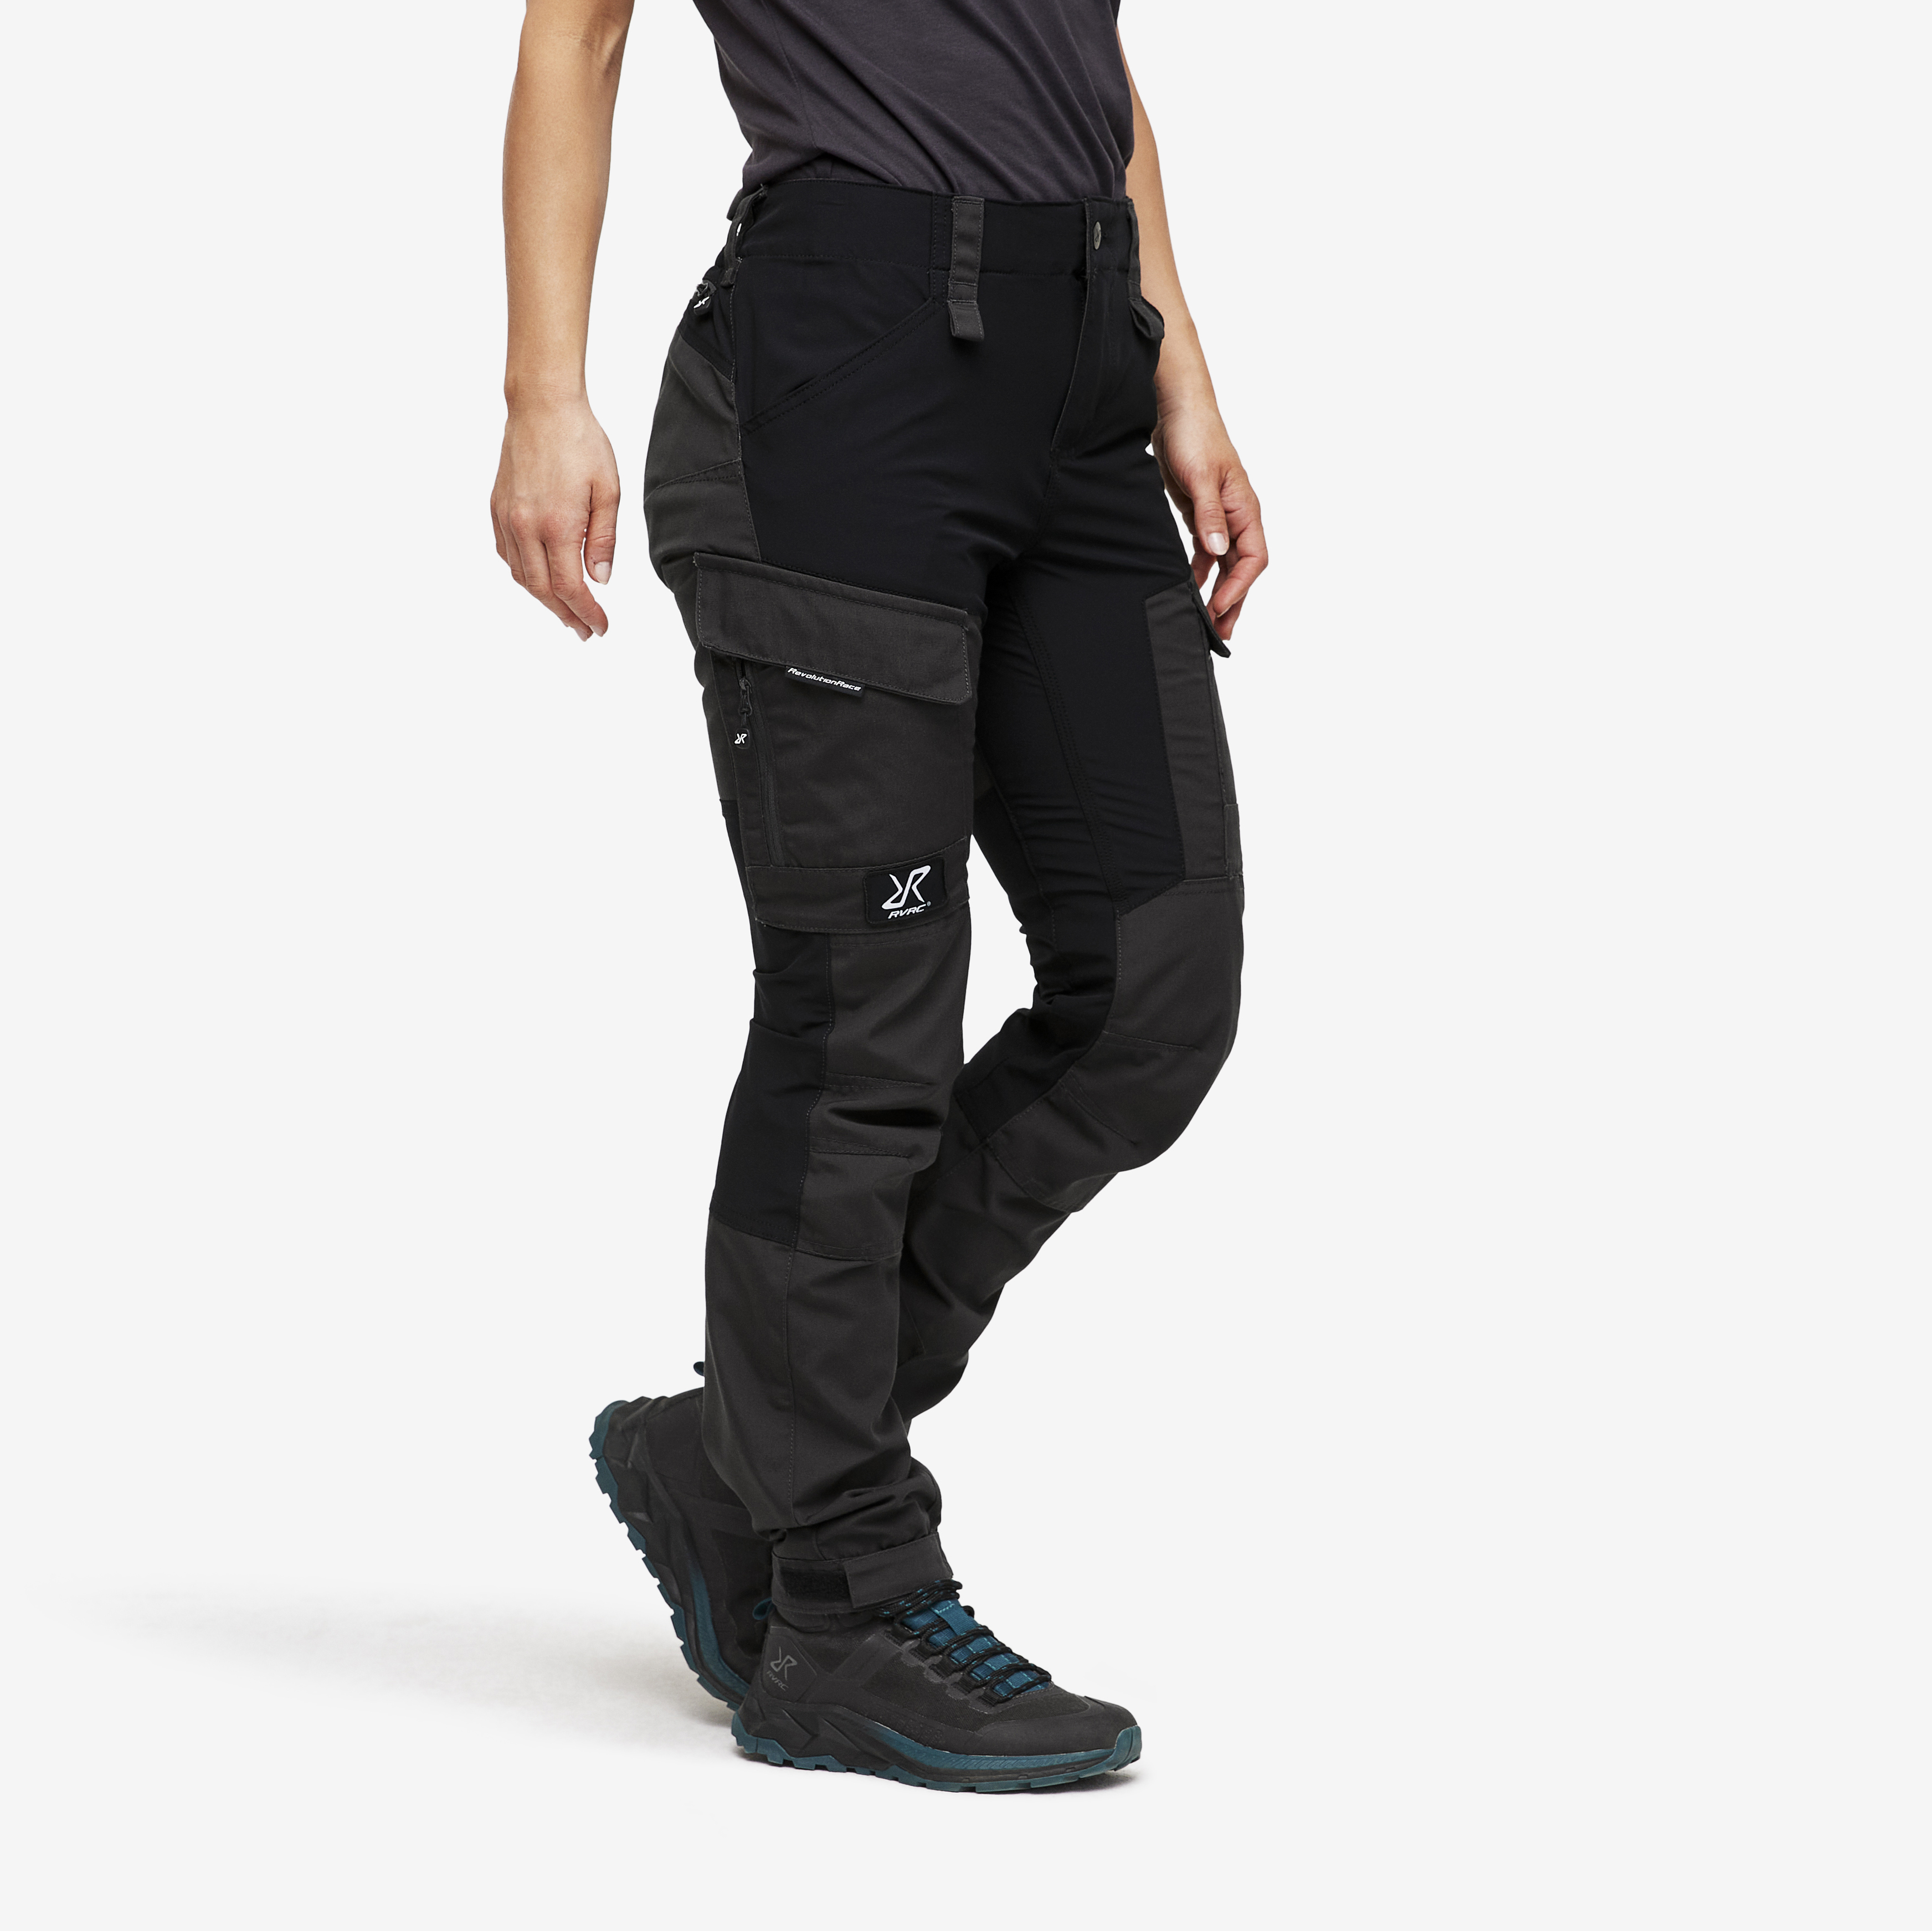 RVRC GP Short outdoor pants for women in black